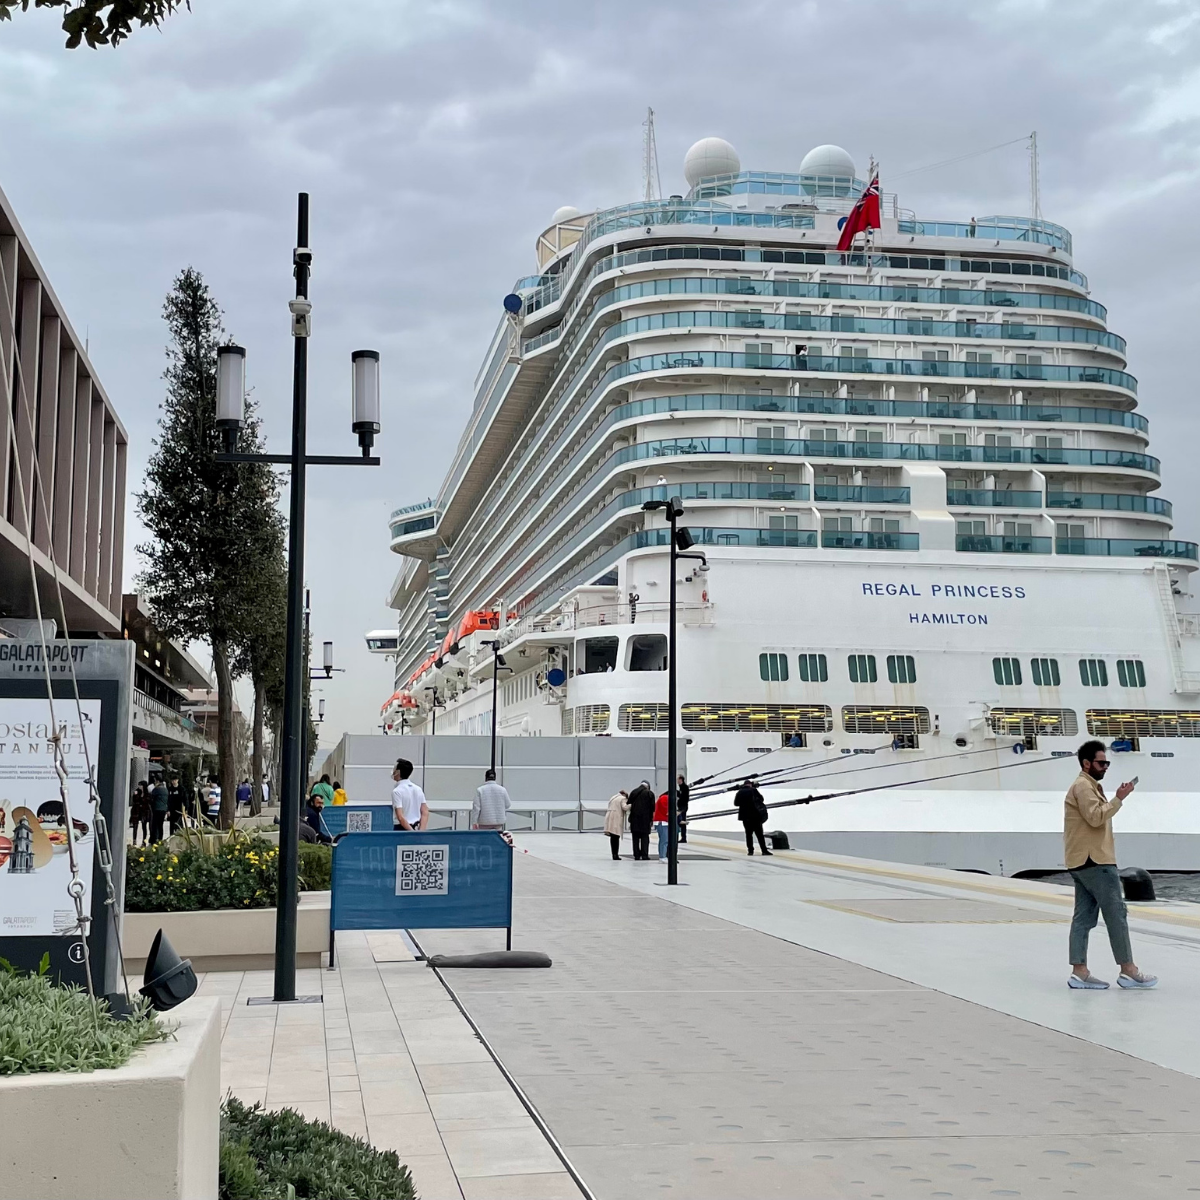 galataport istanbul cruise ship